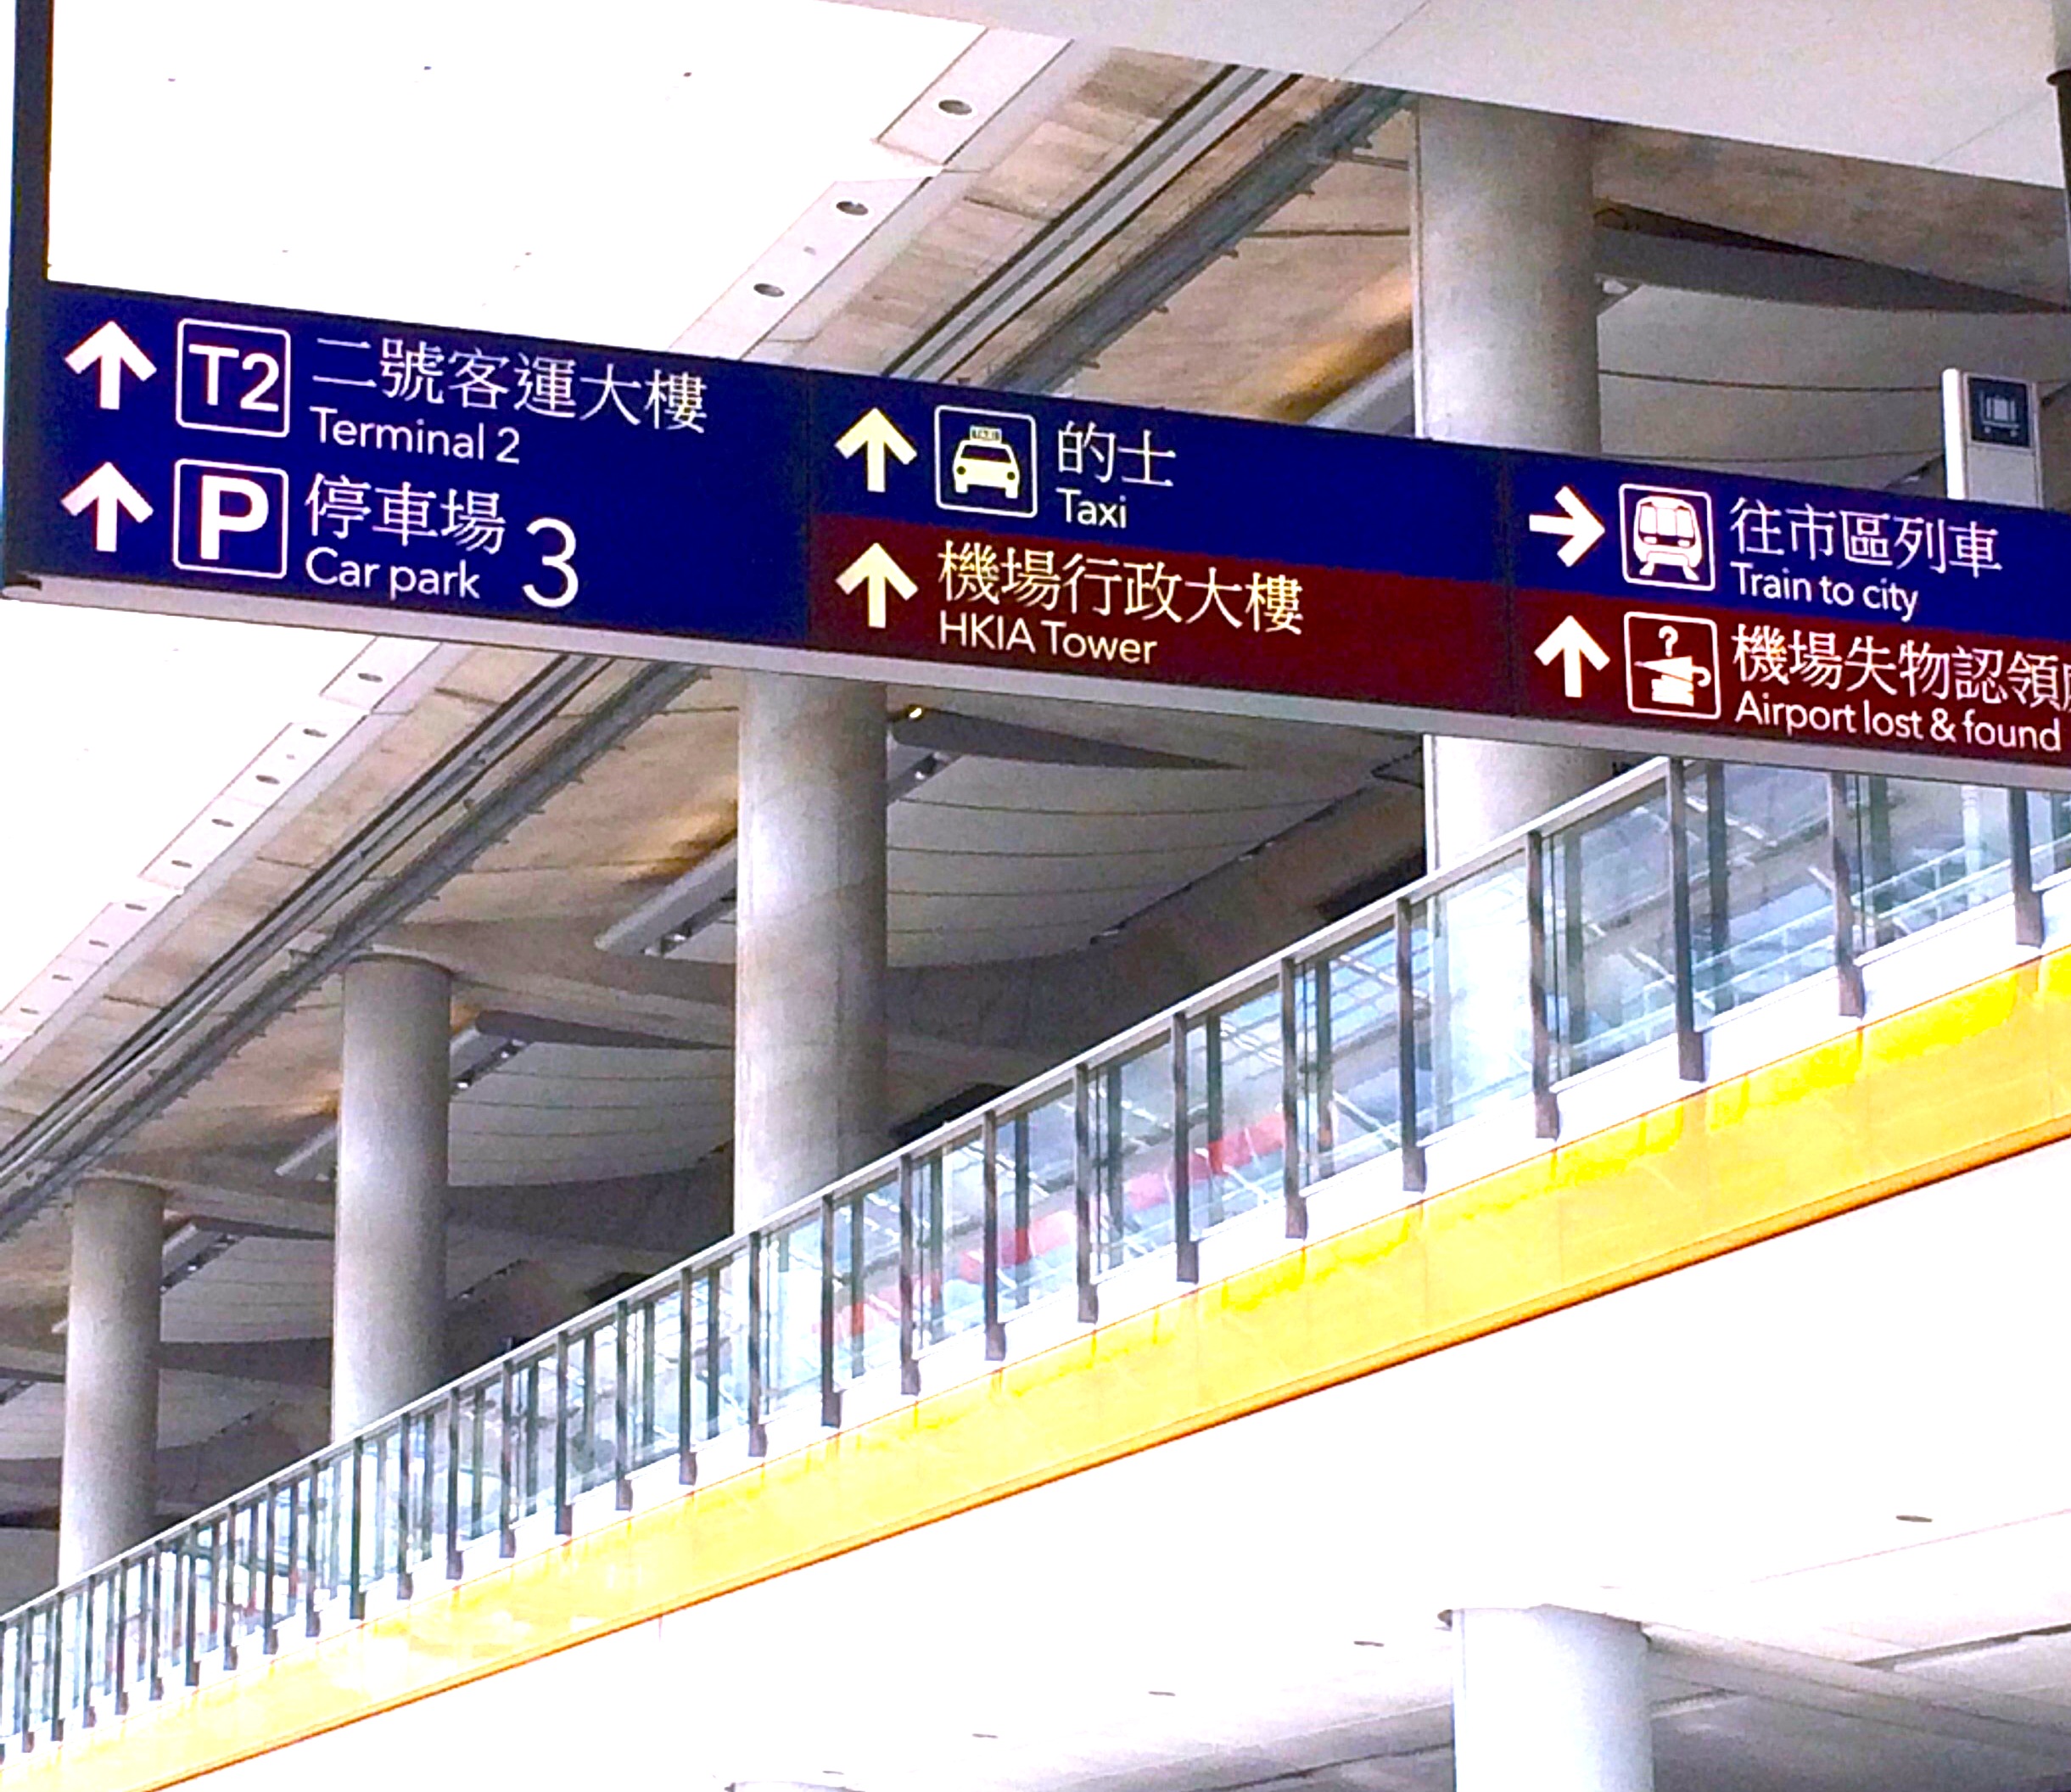 香港空港-エアポートバス-移動方法-7